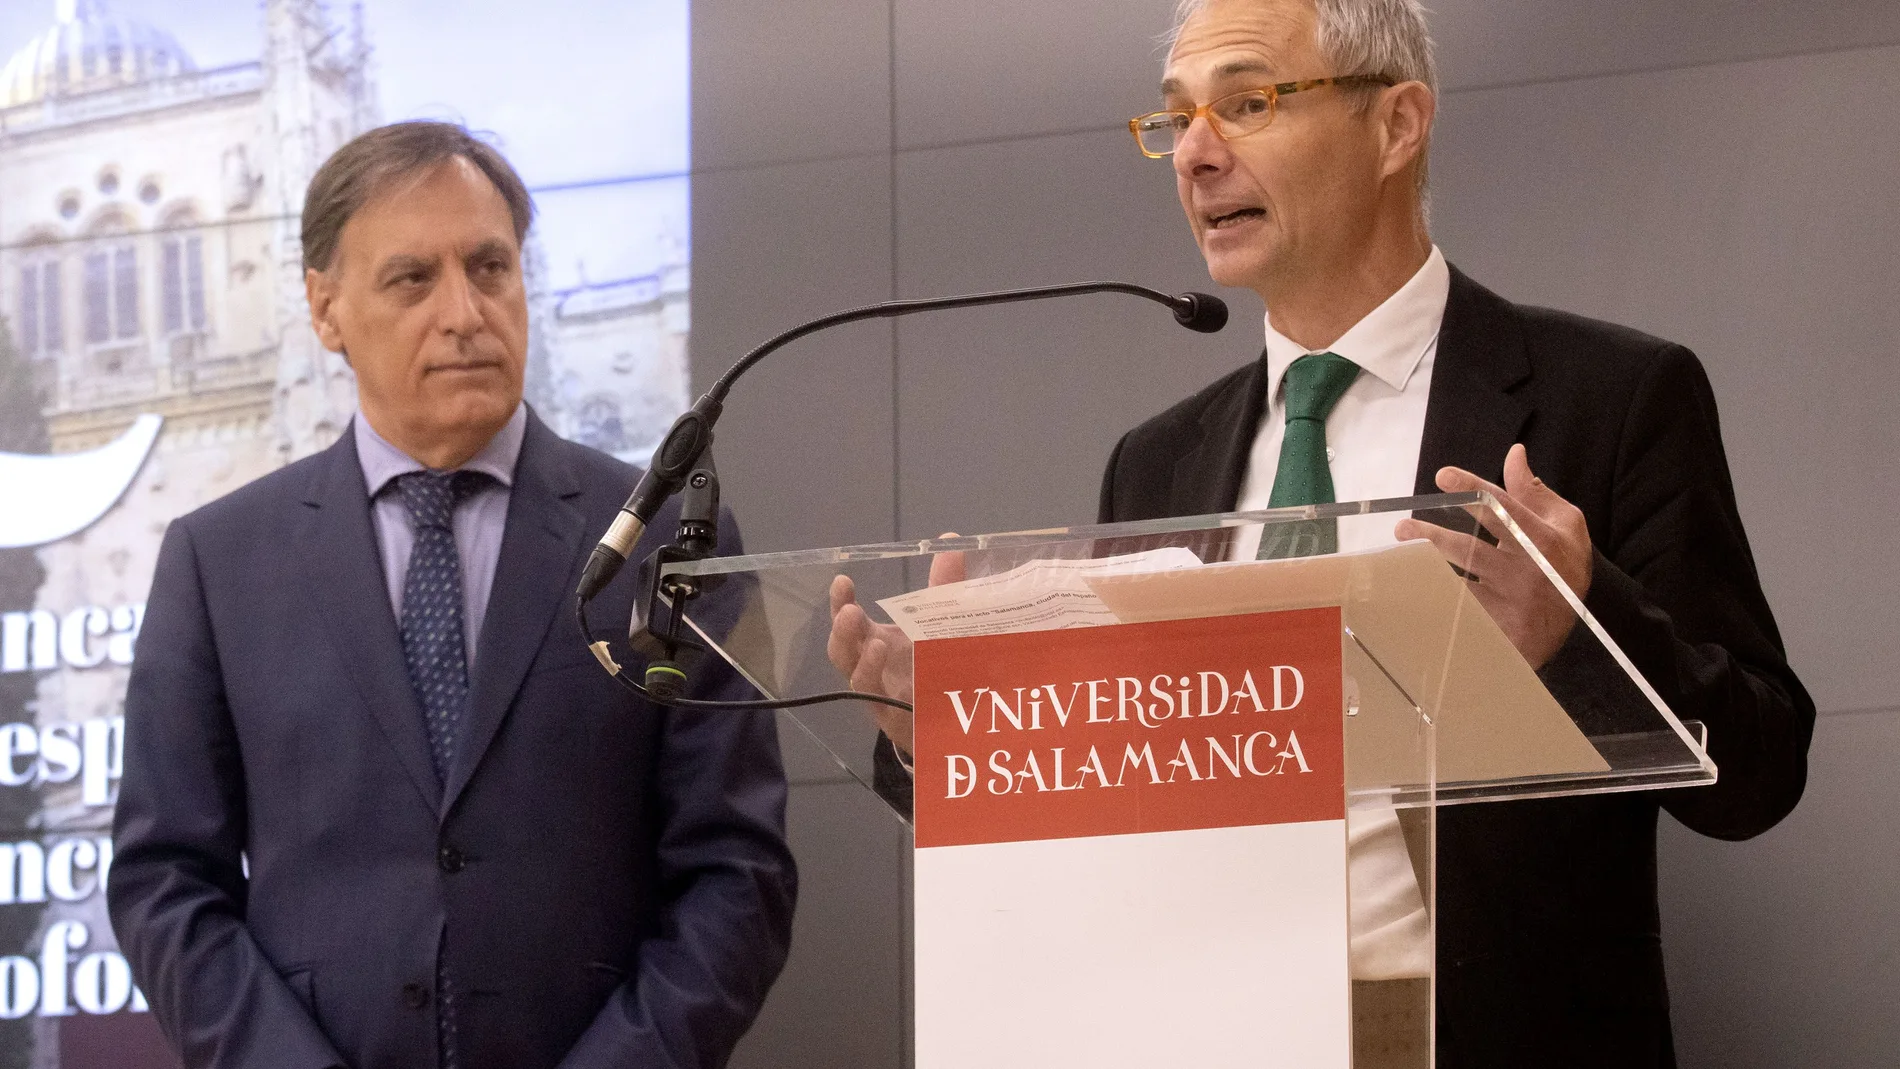 El rector de la Usal, Ricardo Rivero interviene en la jornada en presencia del alcalde de Salamanca, Carlos García Carbayo